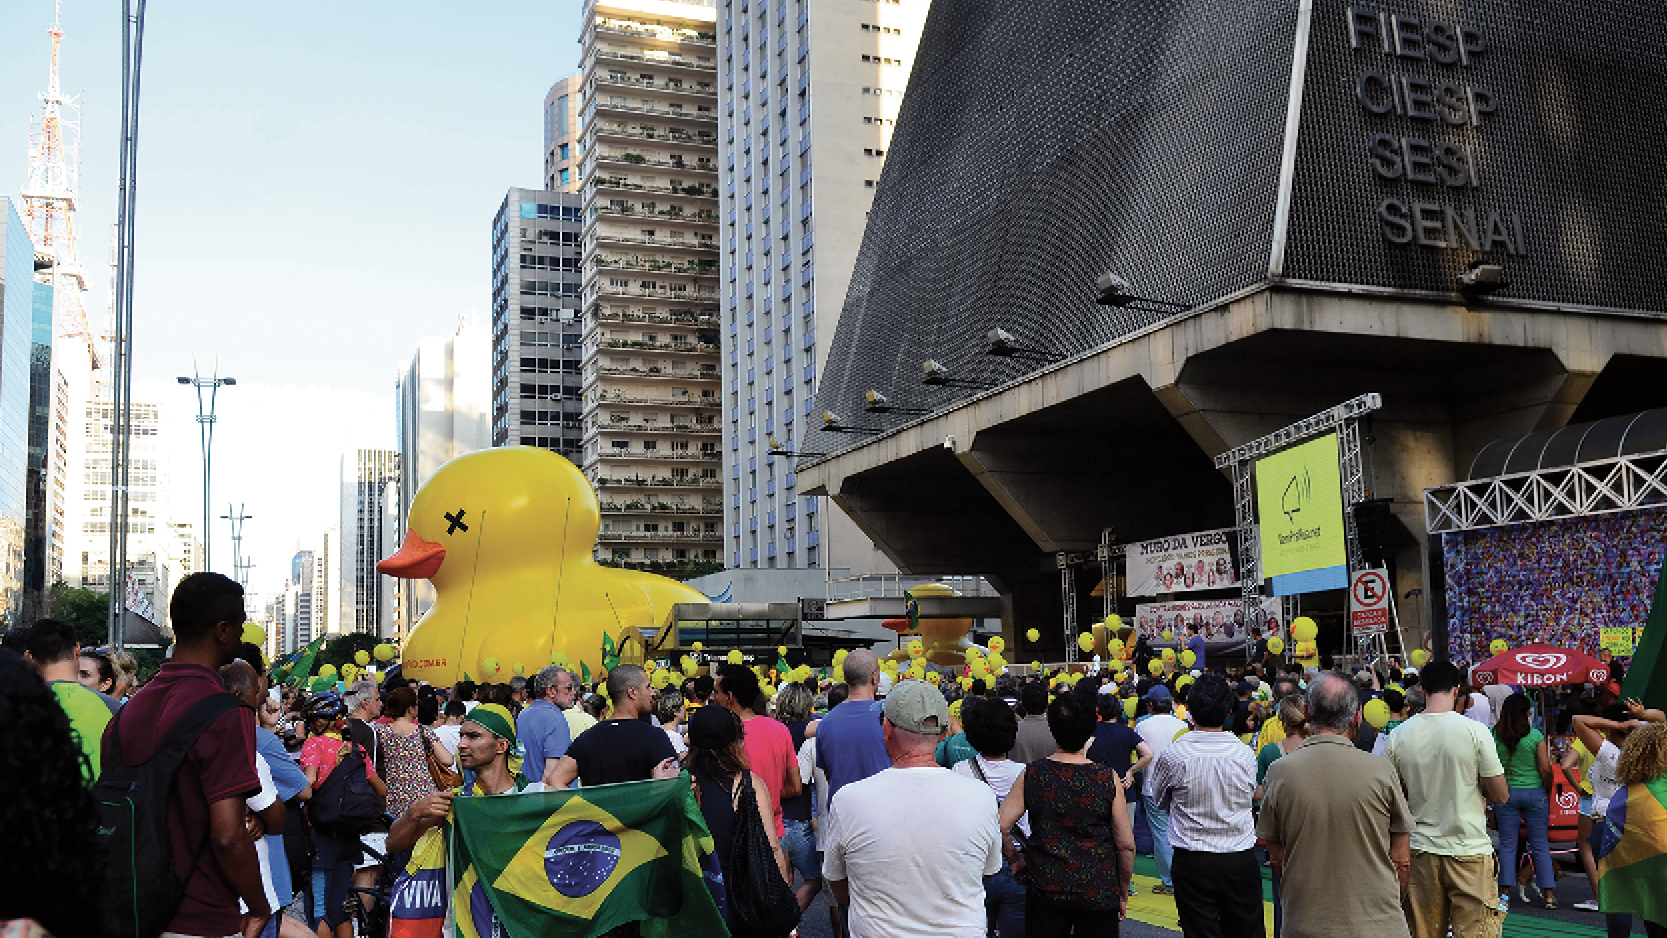 O que há de novo na nova direita brasileira?